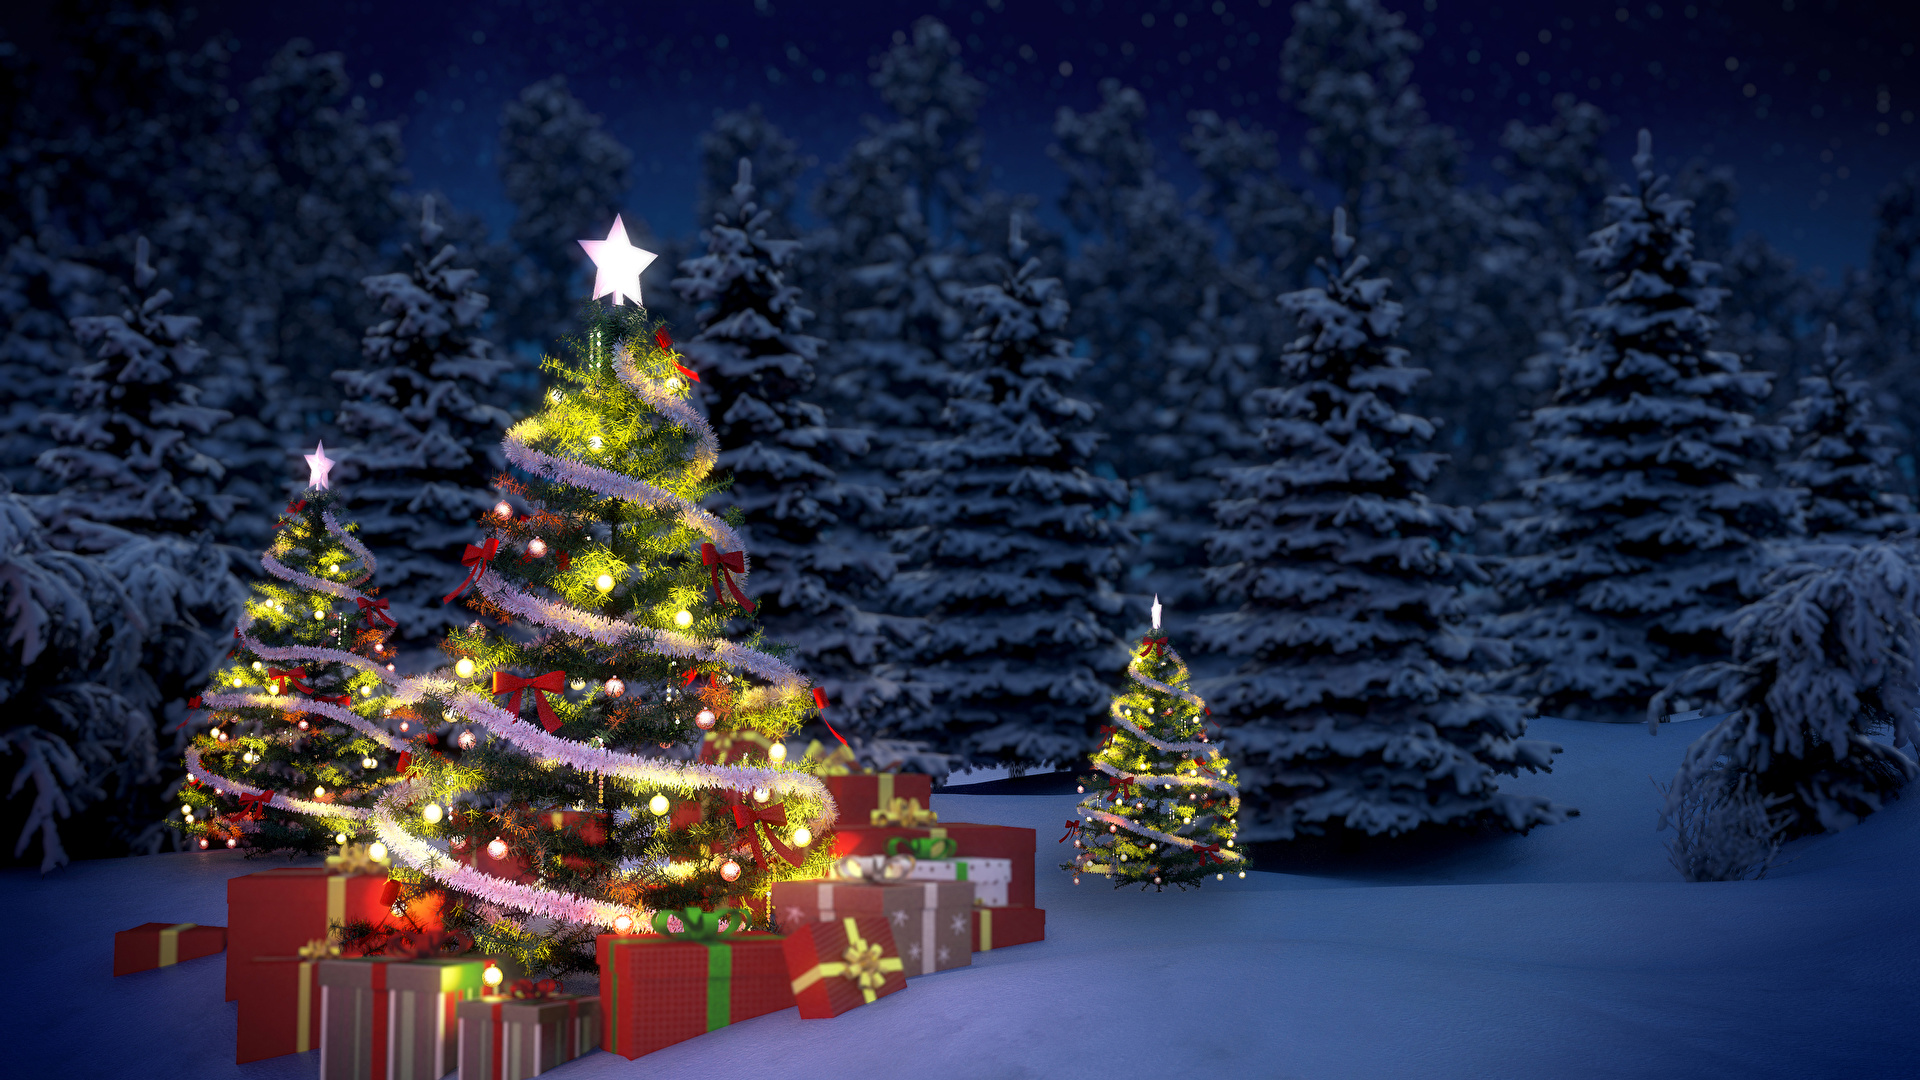 Giáng sinh: Nếu bạn yêu thích một mùa lễ Giáng sinh ấm áp và đầy hạnh phúc, thì hãy xem ngay hình ảnh của chúng tôi về Giáng sinh. Các bức hình sẽ cho bạn trải nghiệm những khoảnh khắc ngập tràn tình yêu thương và ấm áp của mùa lễ này.